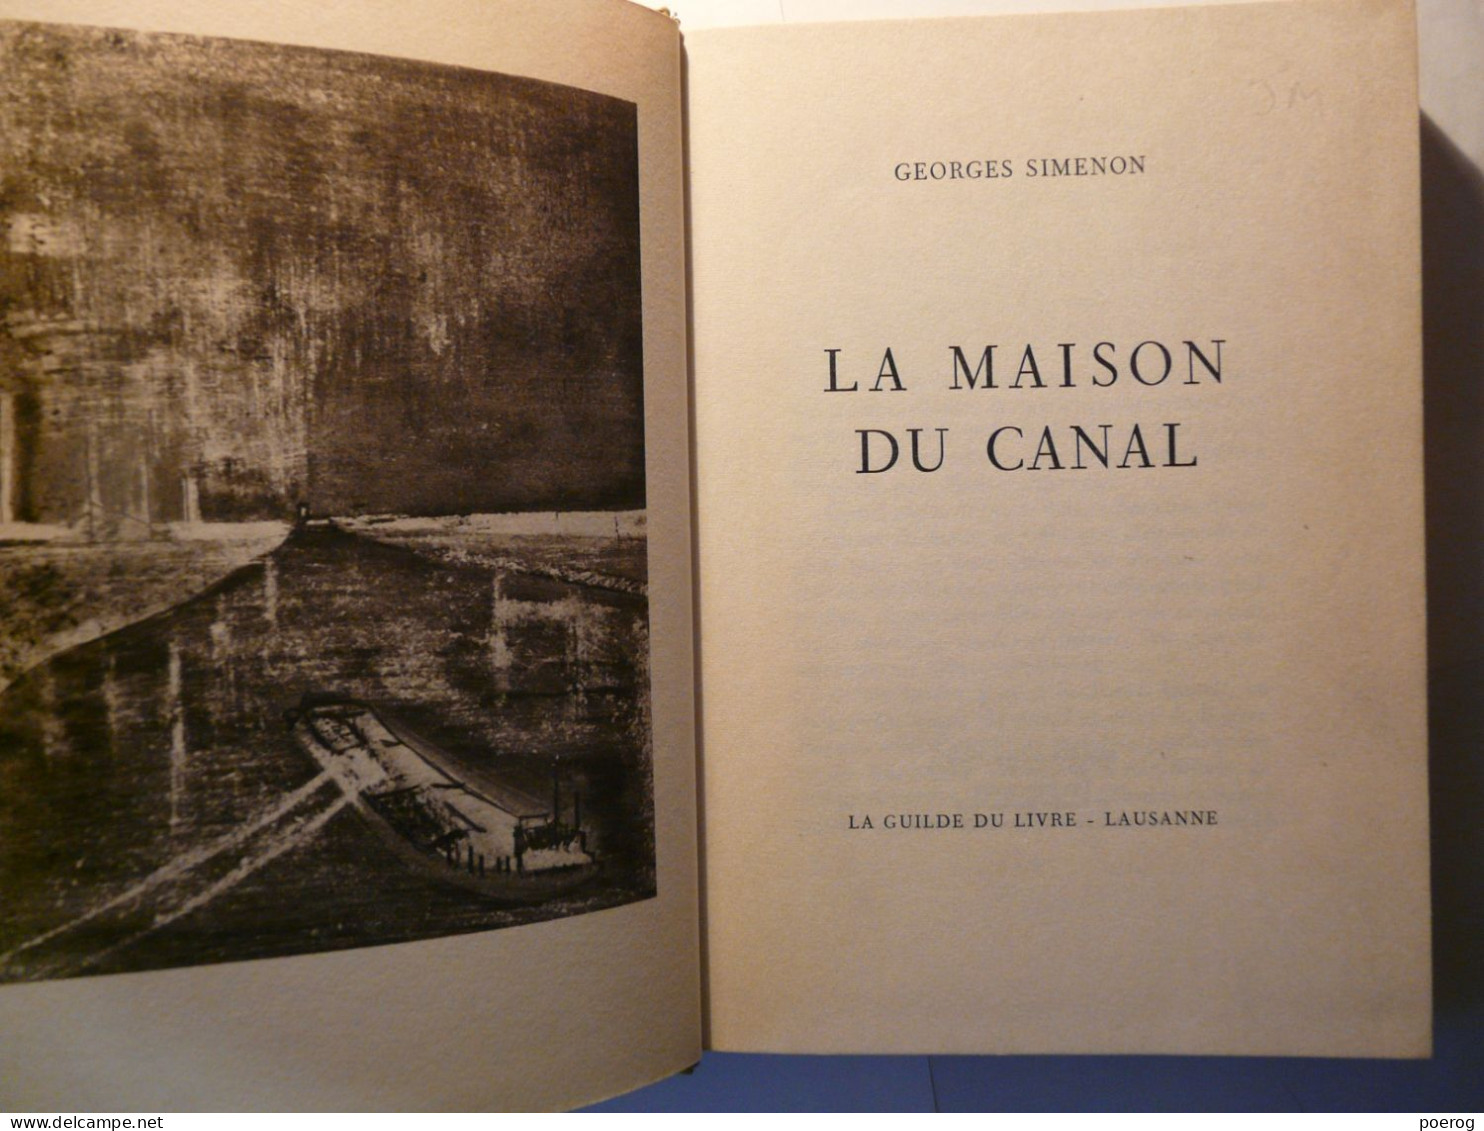 GEORGES SIMENON - LA MAISON DU CANAL - NUMEROTE - LA GUILDE DU LIVRE LAUSANNE - COUVERTURE RIGIDE - Belgian Authors